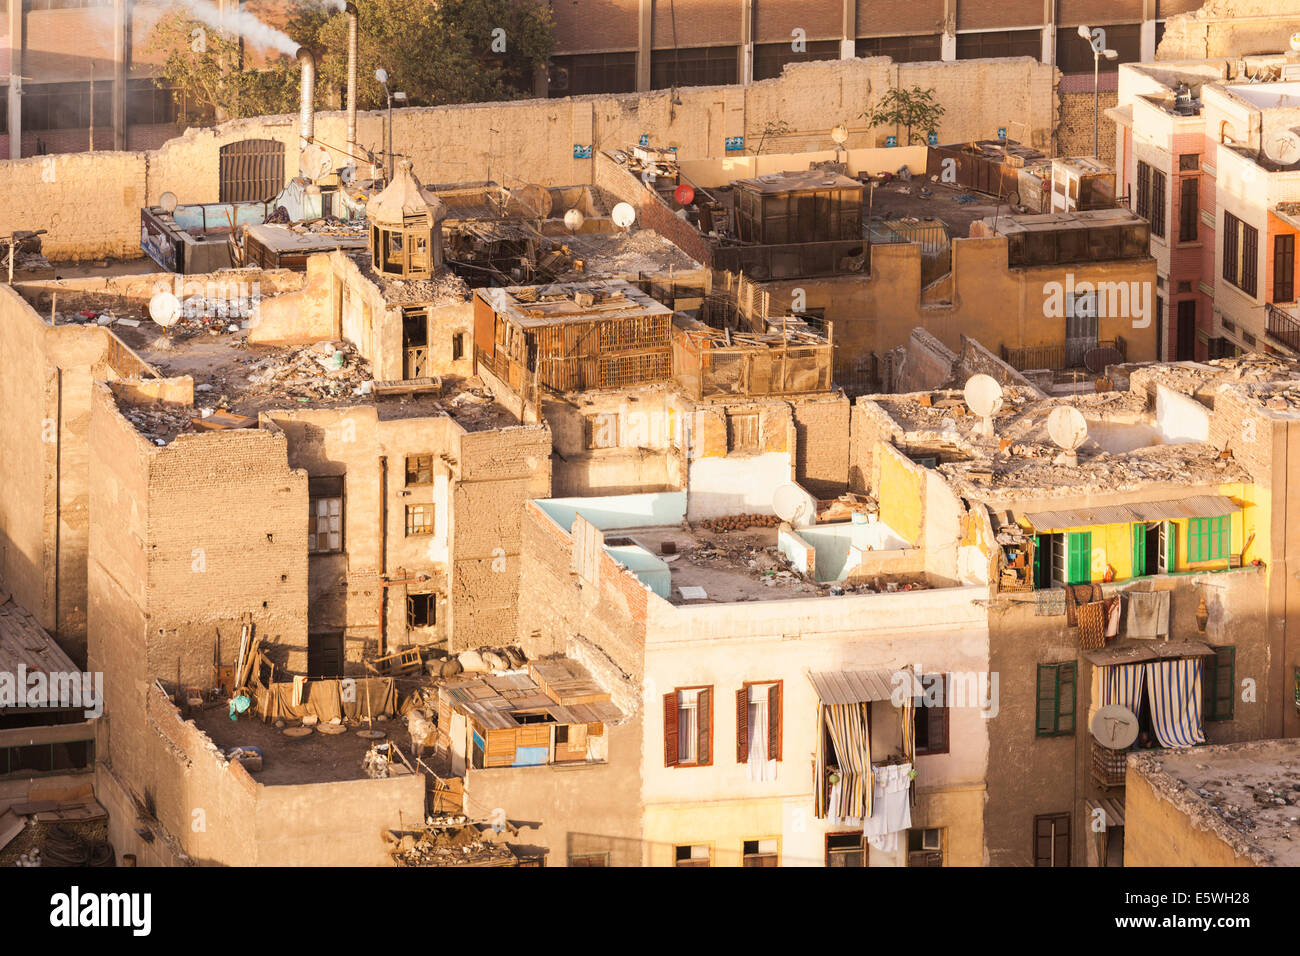 El Cairo, Egipto - tejados de edificios de tugurios en el centro de El Cairo el centro de la ciudad Foto de stock